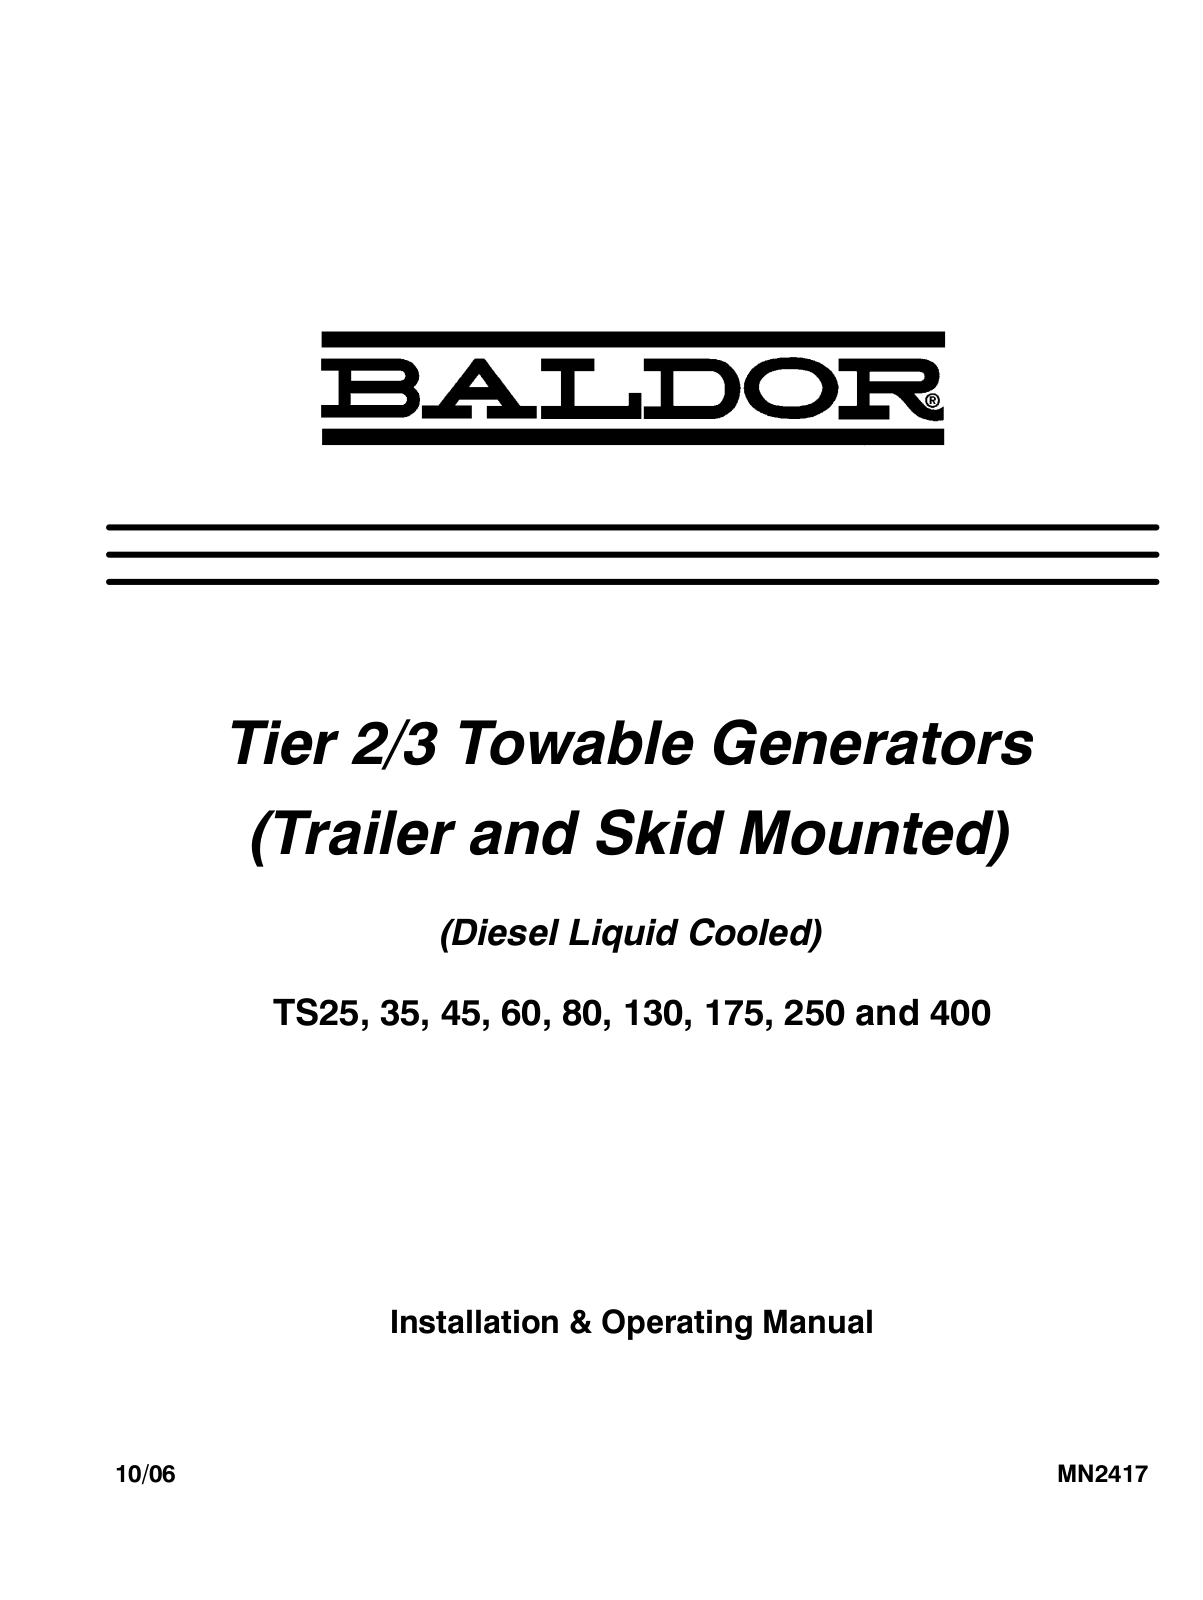 Baldor TS175, TS80, TS45, TS25, TS60 User Manual